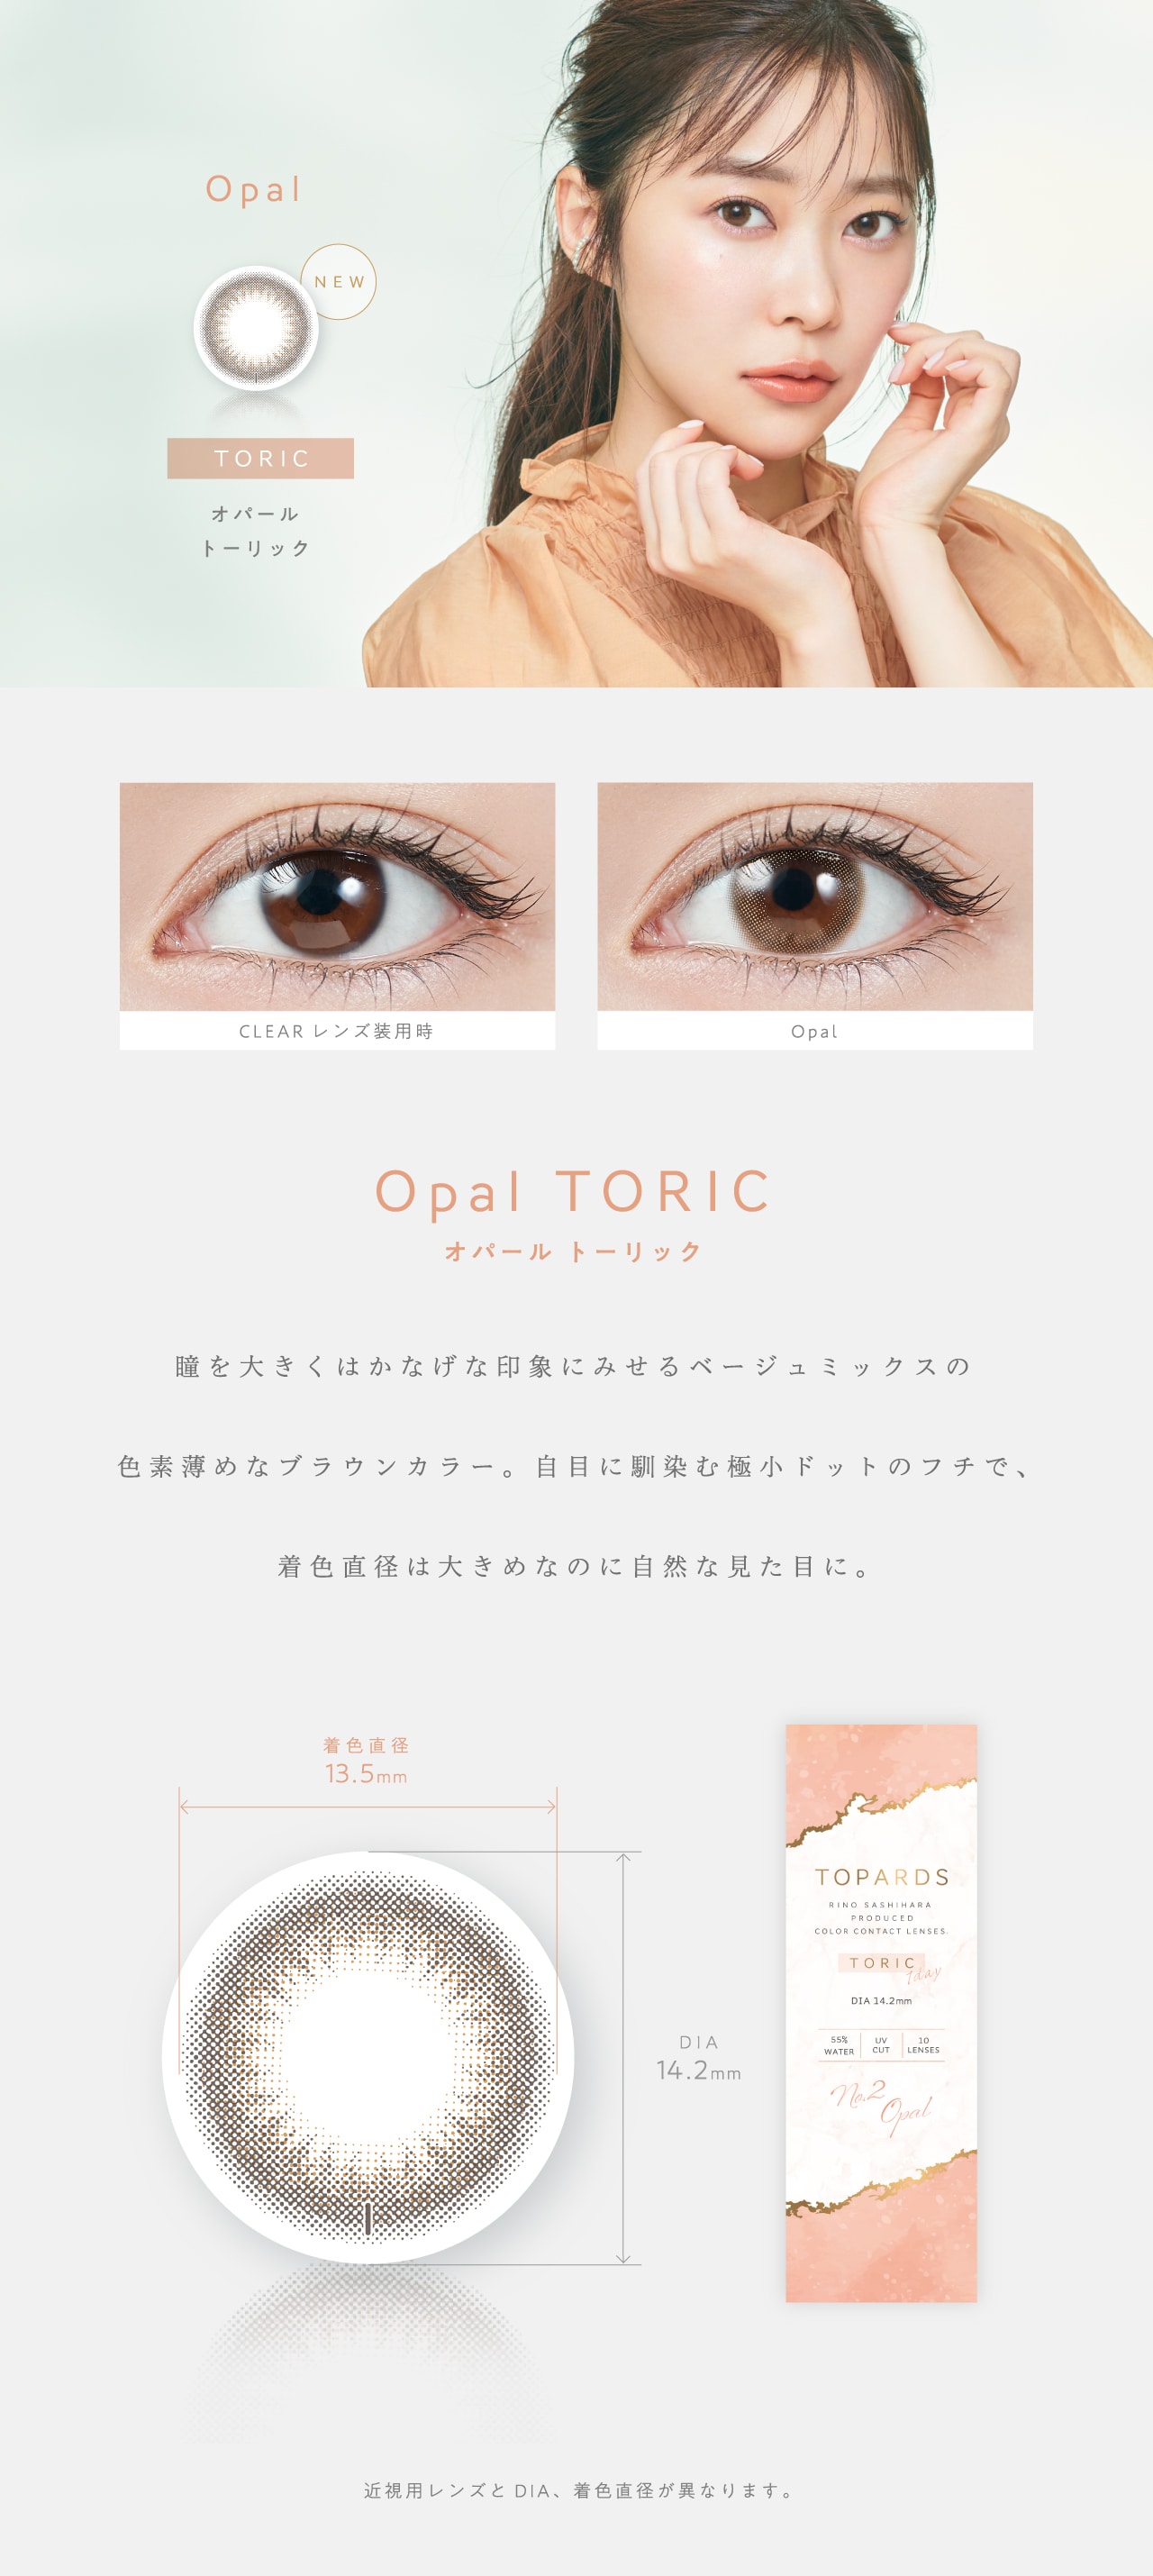 TOPARDS TORIC 1day トパーズ トーリック ワンデー【Opal TORIC オパールトーリック】